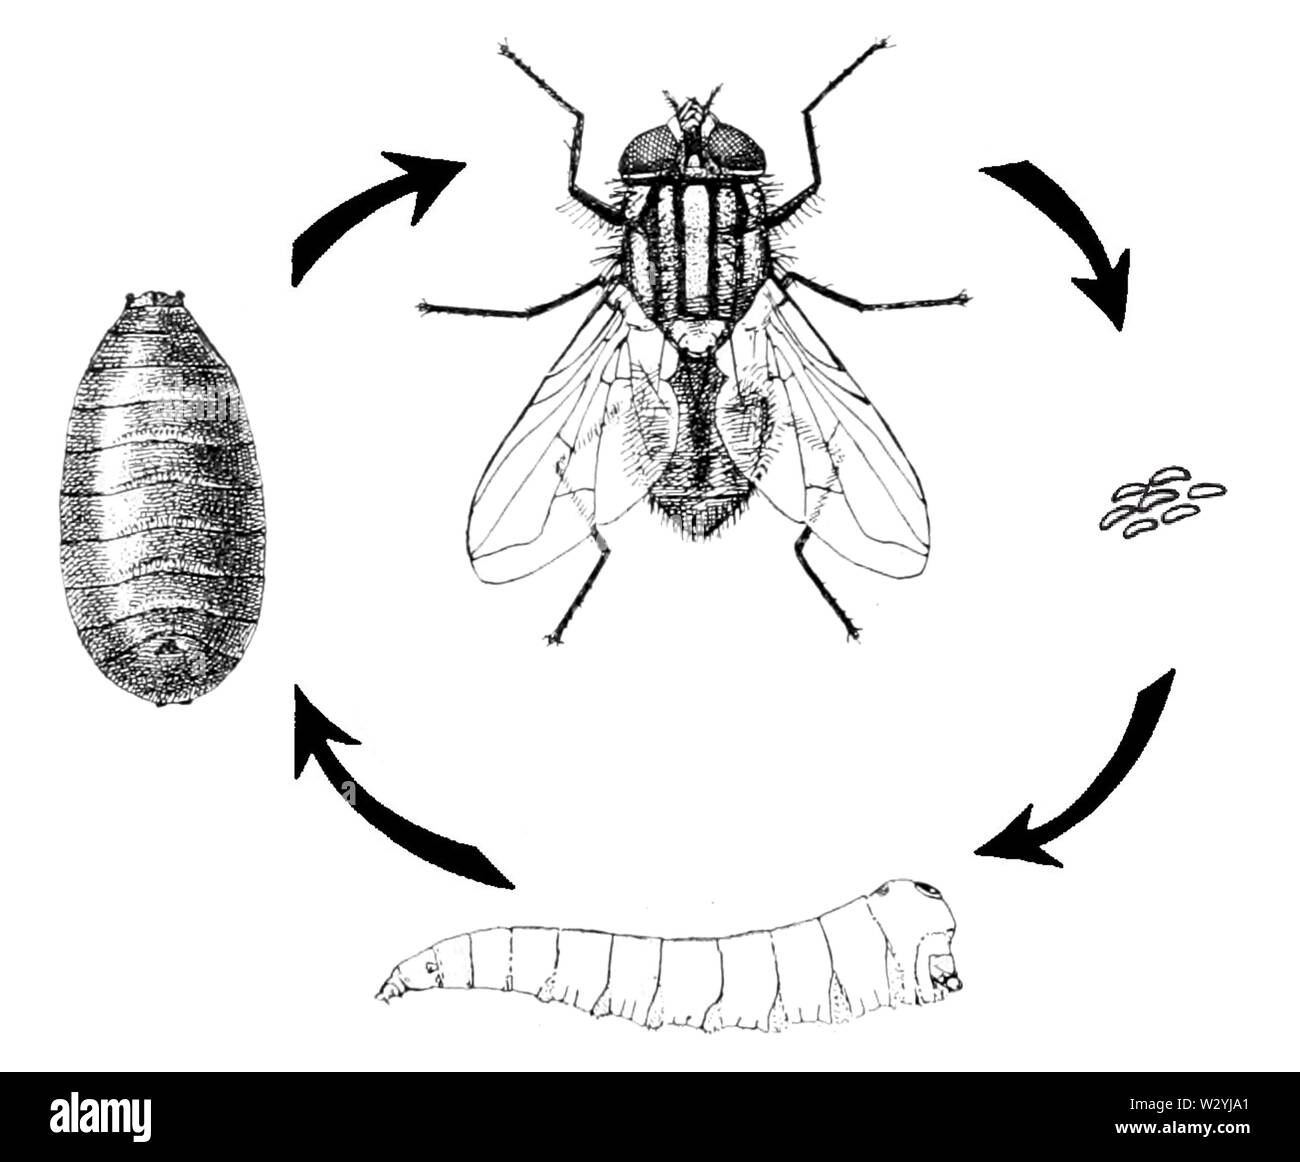 Комнатная муха как называется. Musca domestica жизненный цикл. Цикл развития комнатной мухи. Musca domestica комнатная Муха. Осенняя жигалка жизненный цикл.